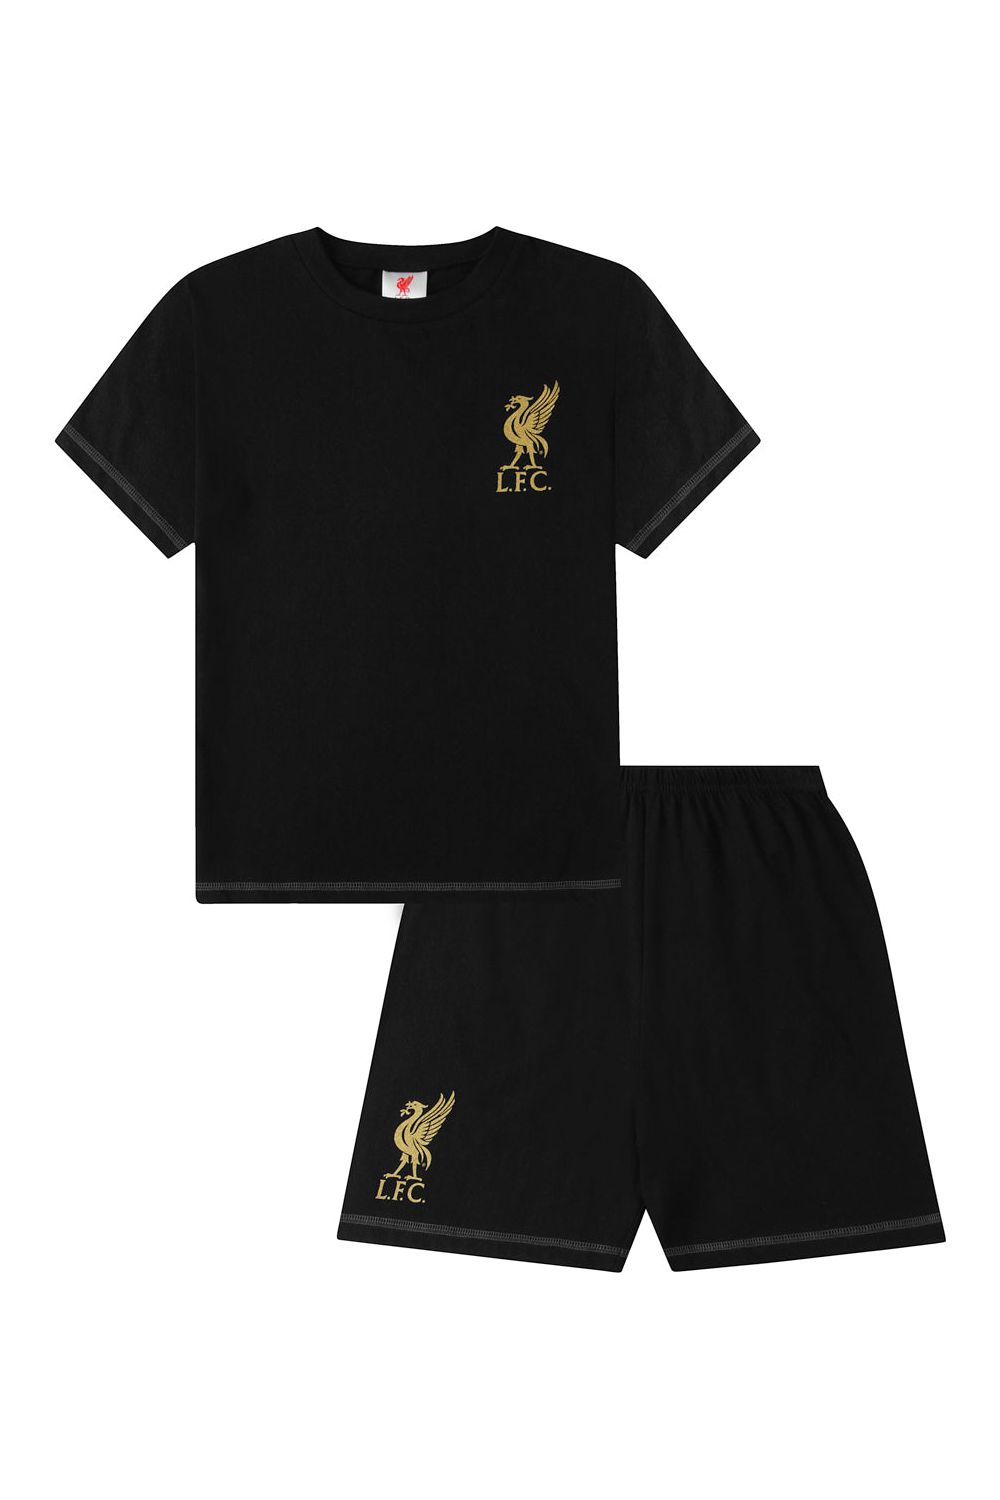 Boys Liverpool F.C Black Gold Short LFC Pyjamas - Pyjamas.com